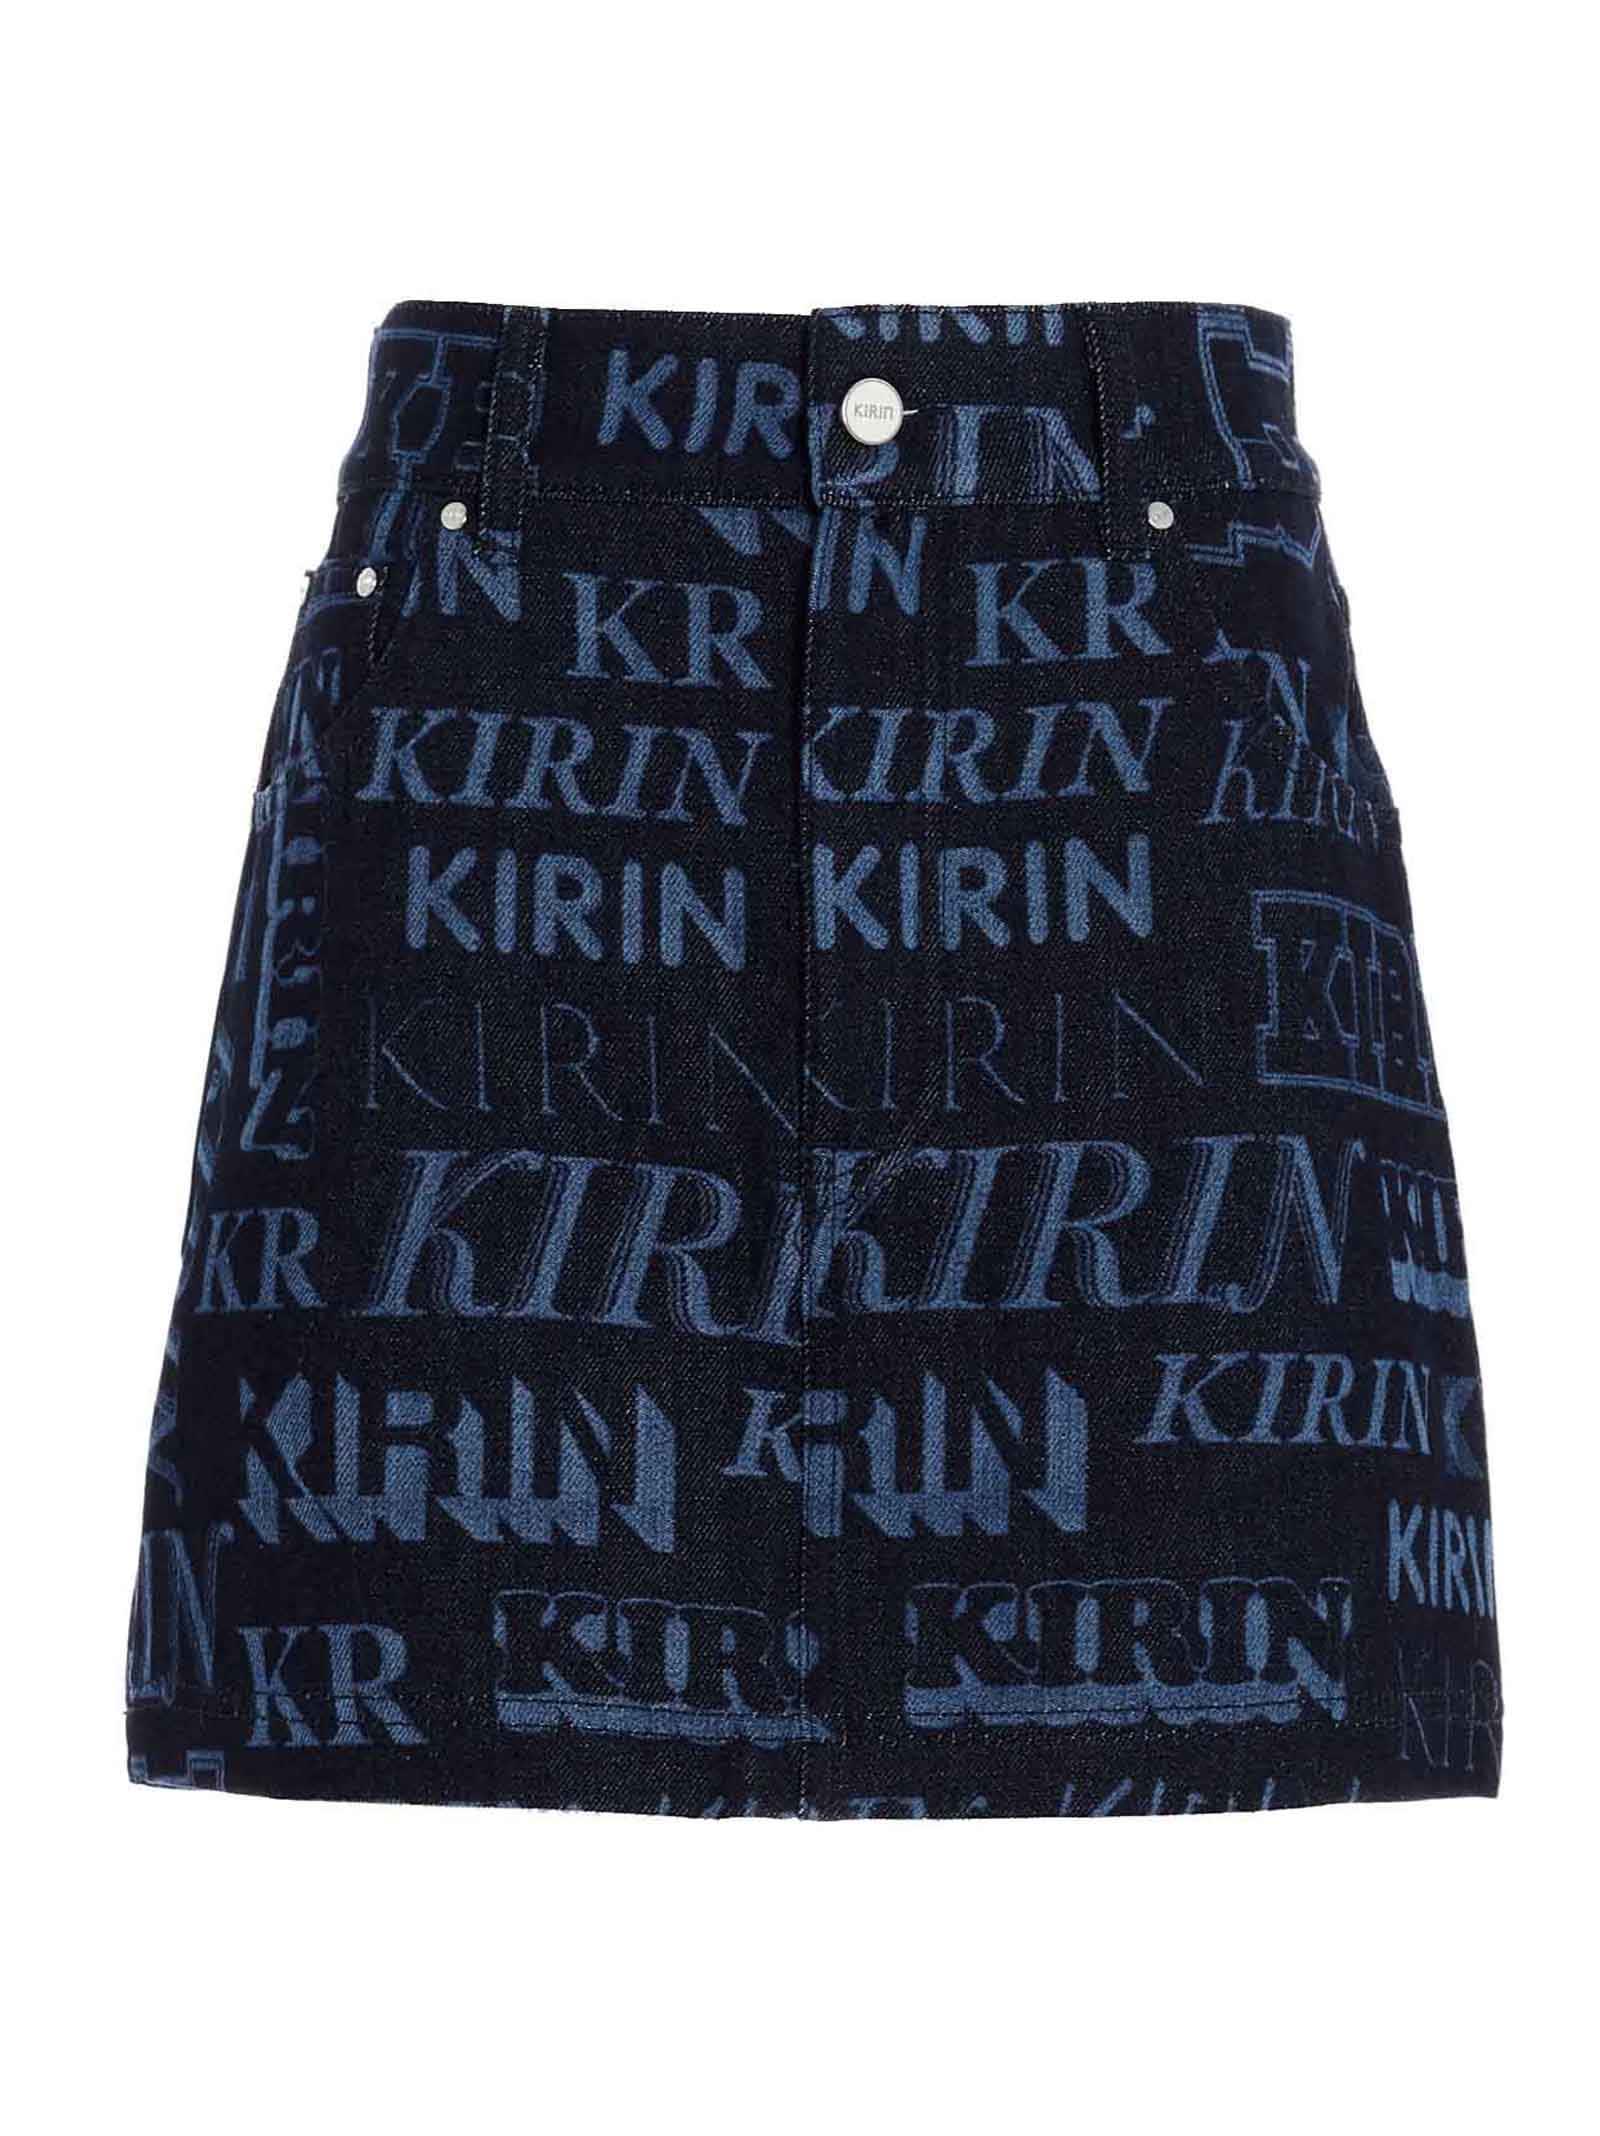 Kirin laser Print Denim Skirt